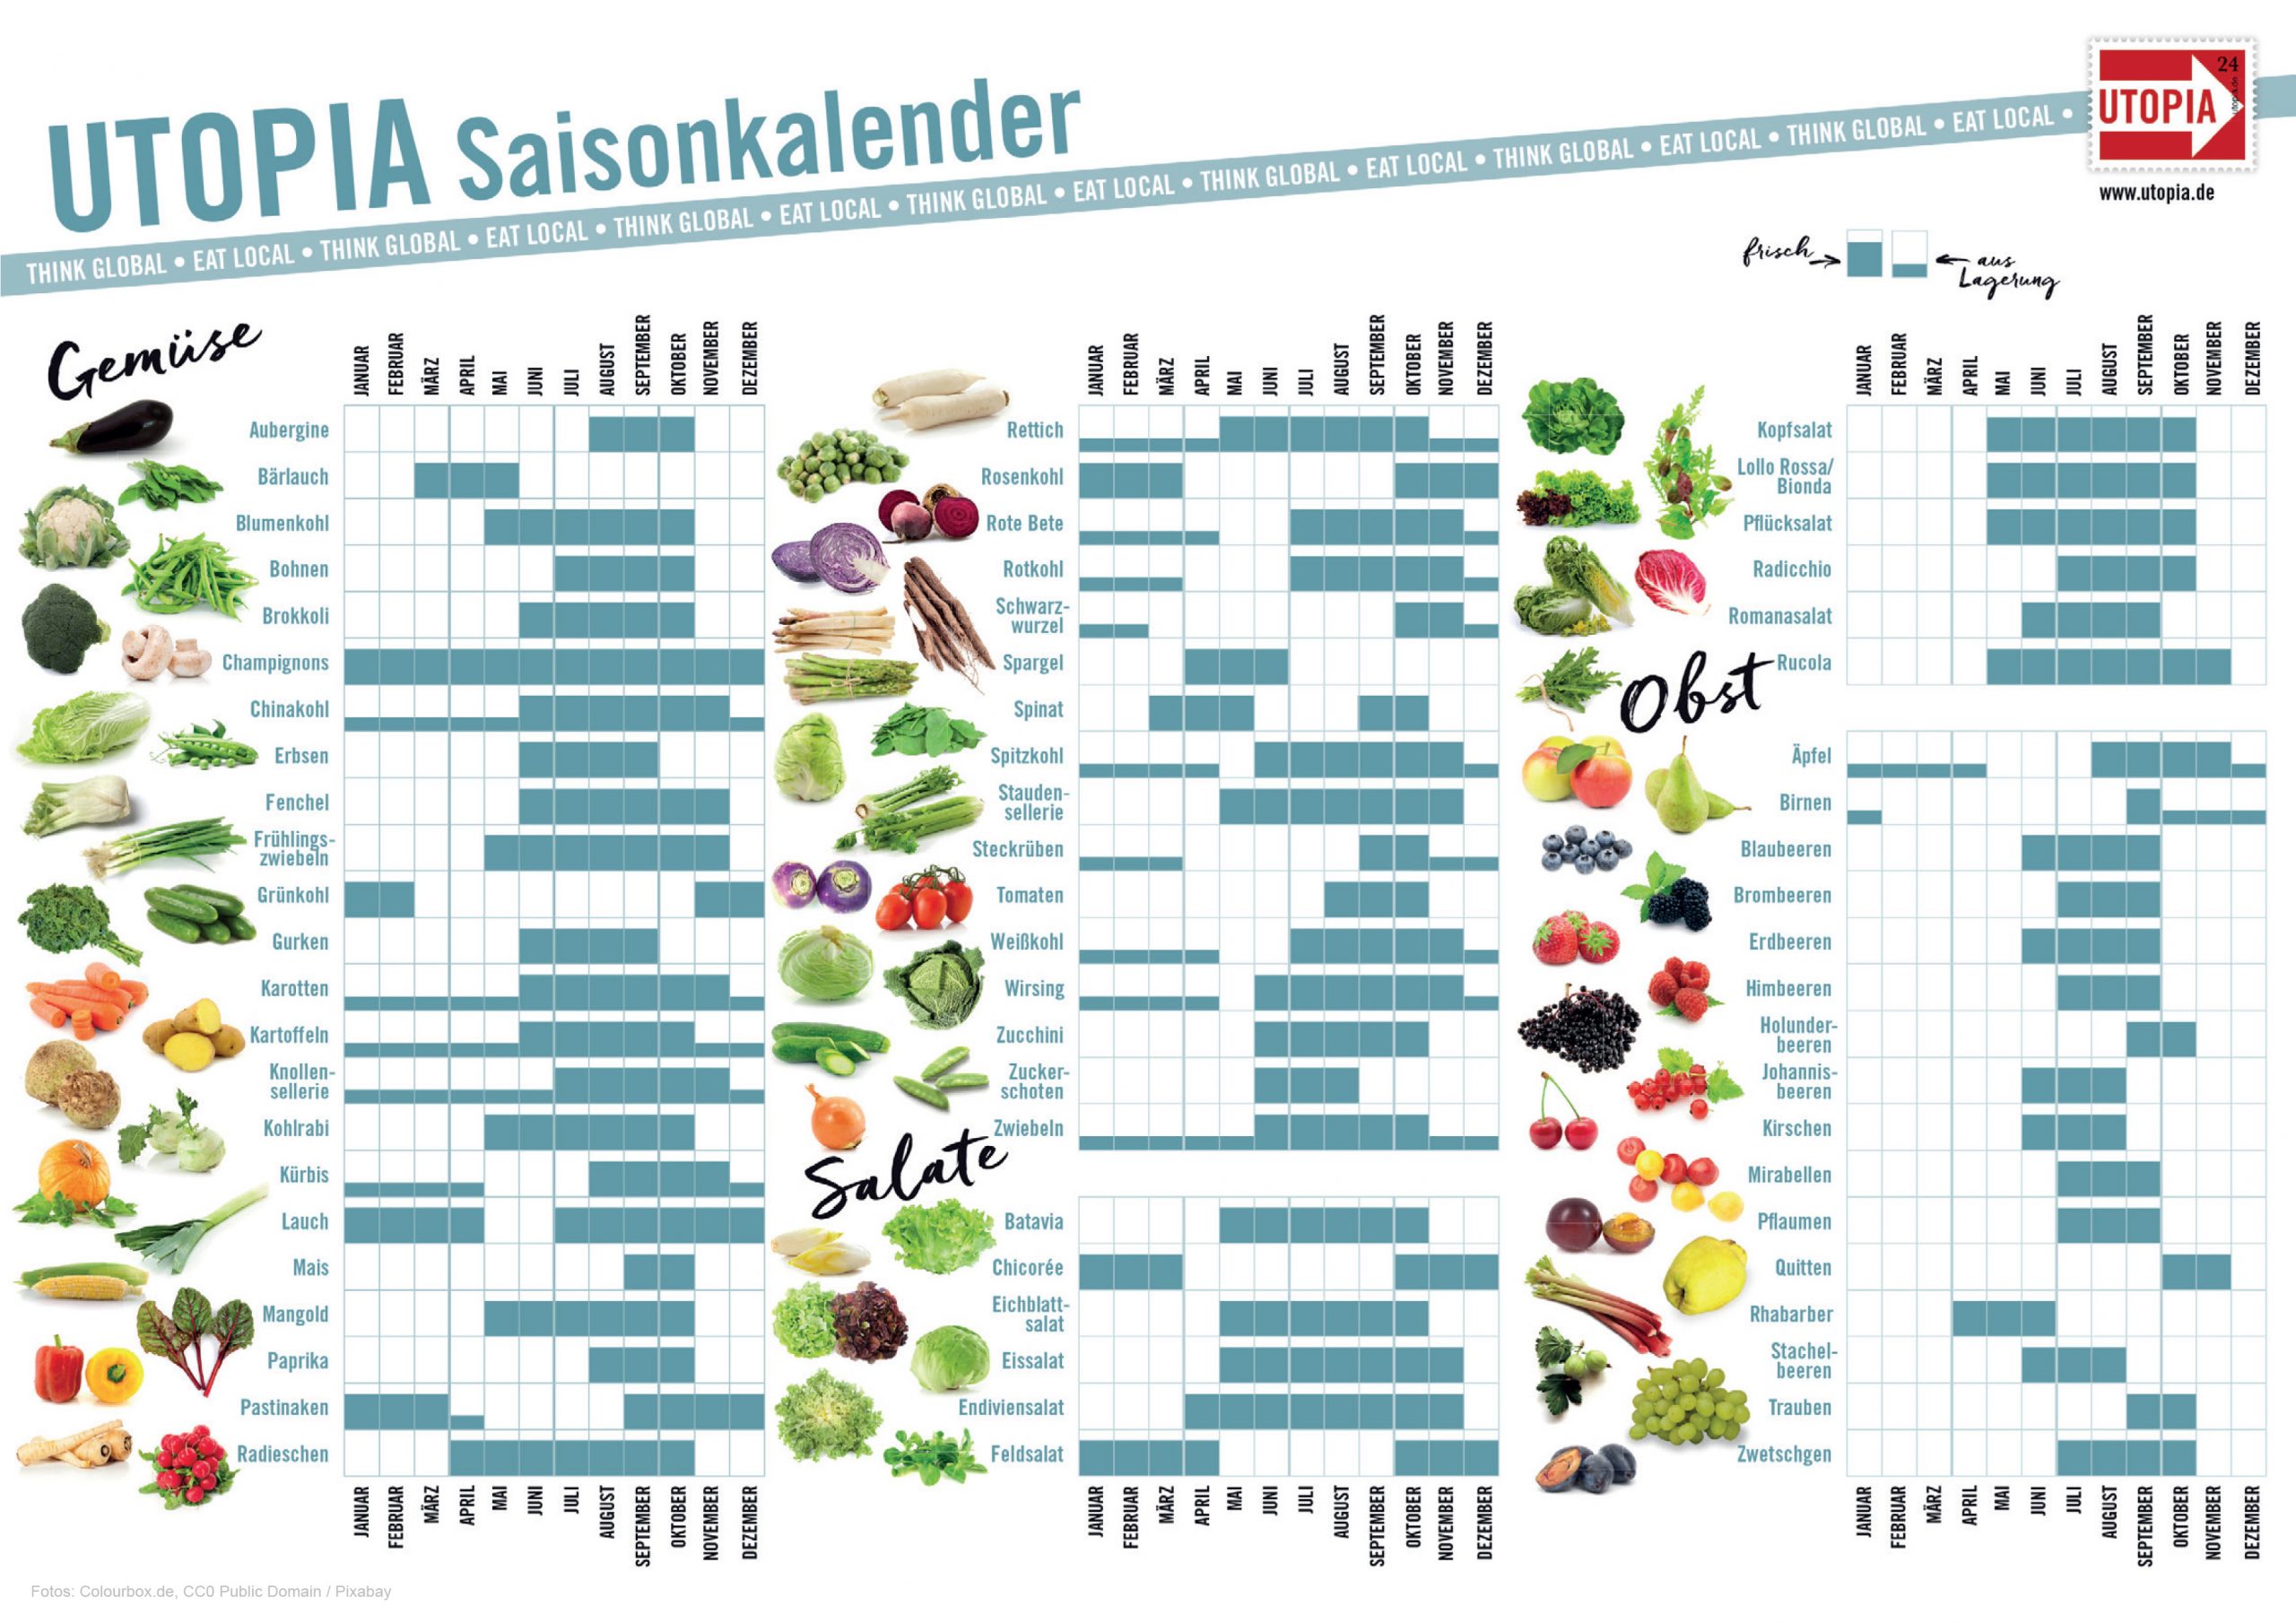 Saisonkalender: Wann Wächst Welches Obst Und Gemüse? – Utopia.de ganzes